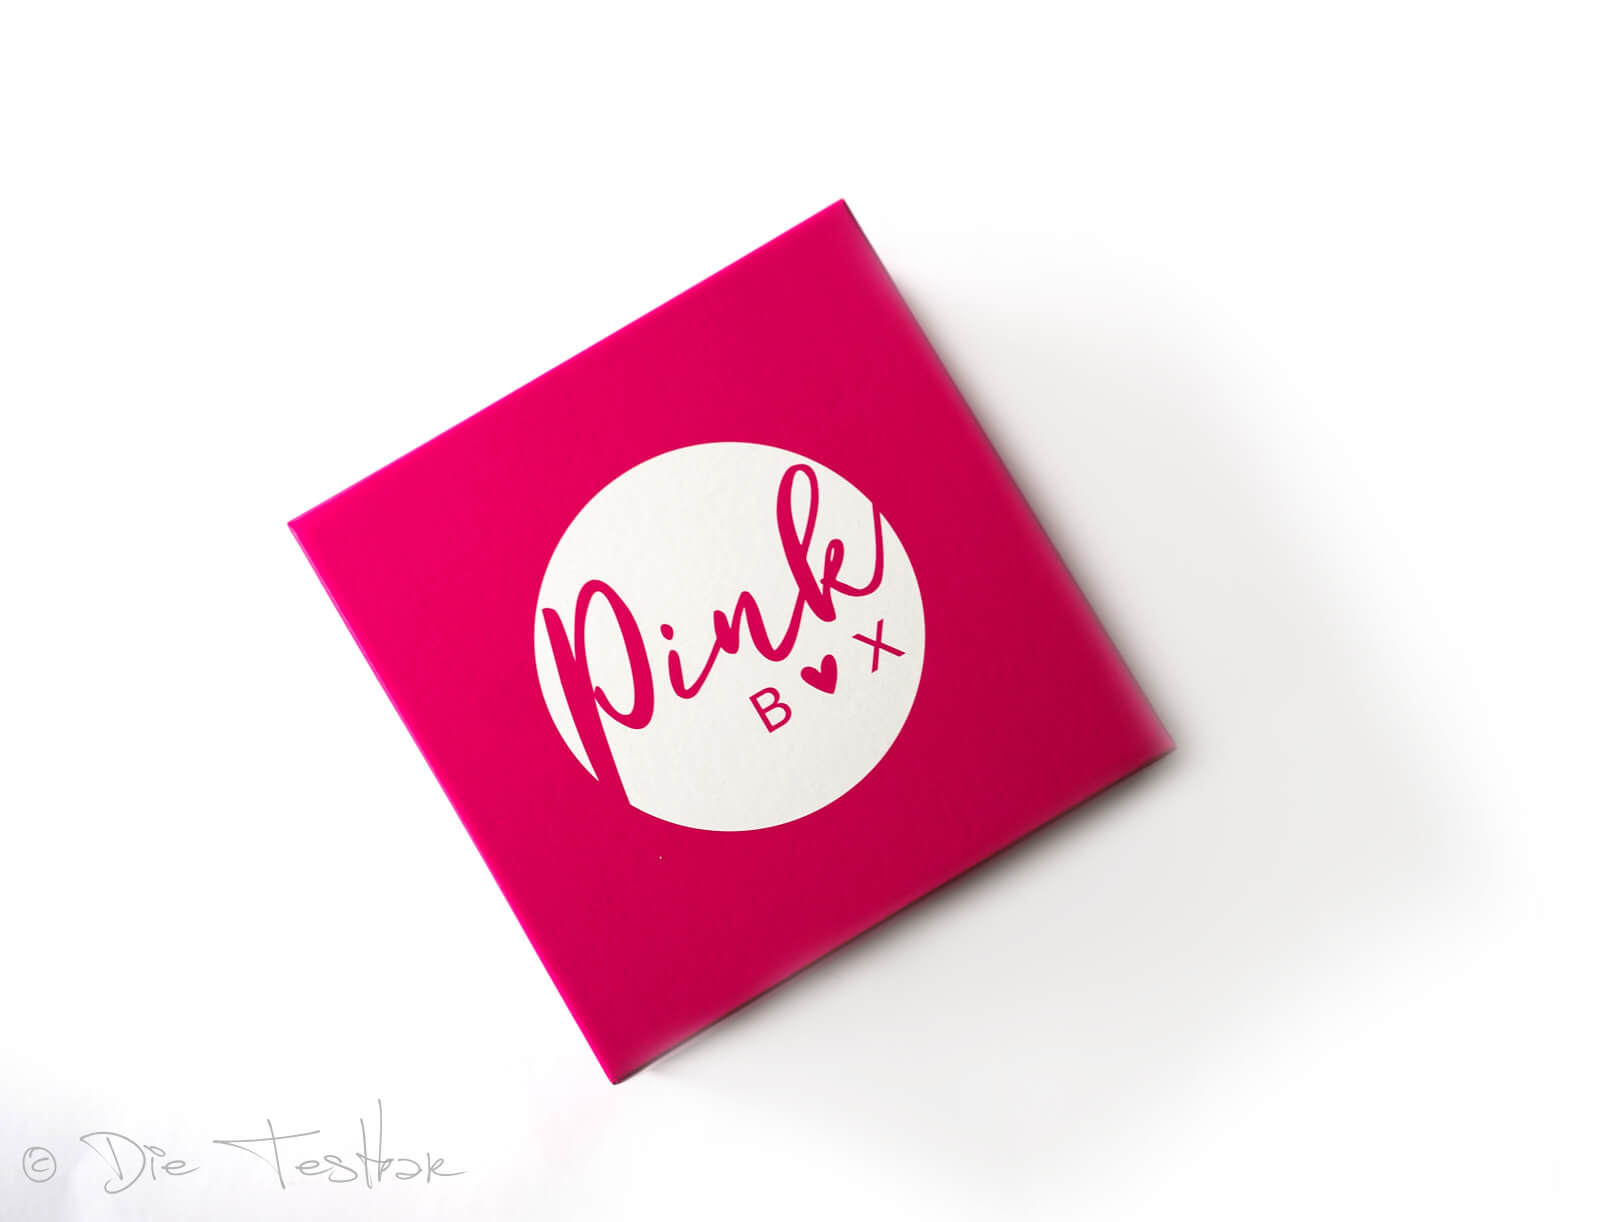 DIE PINK BOX im August 2021 – Pink Box Ciao Bella 2021